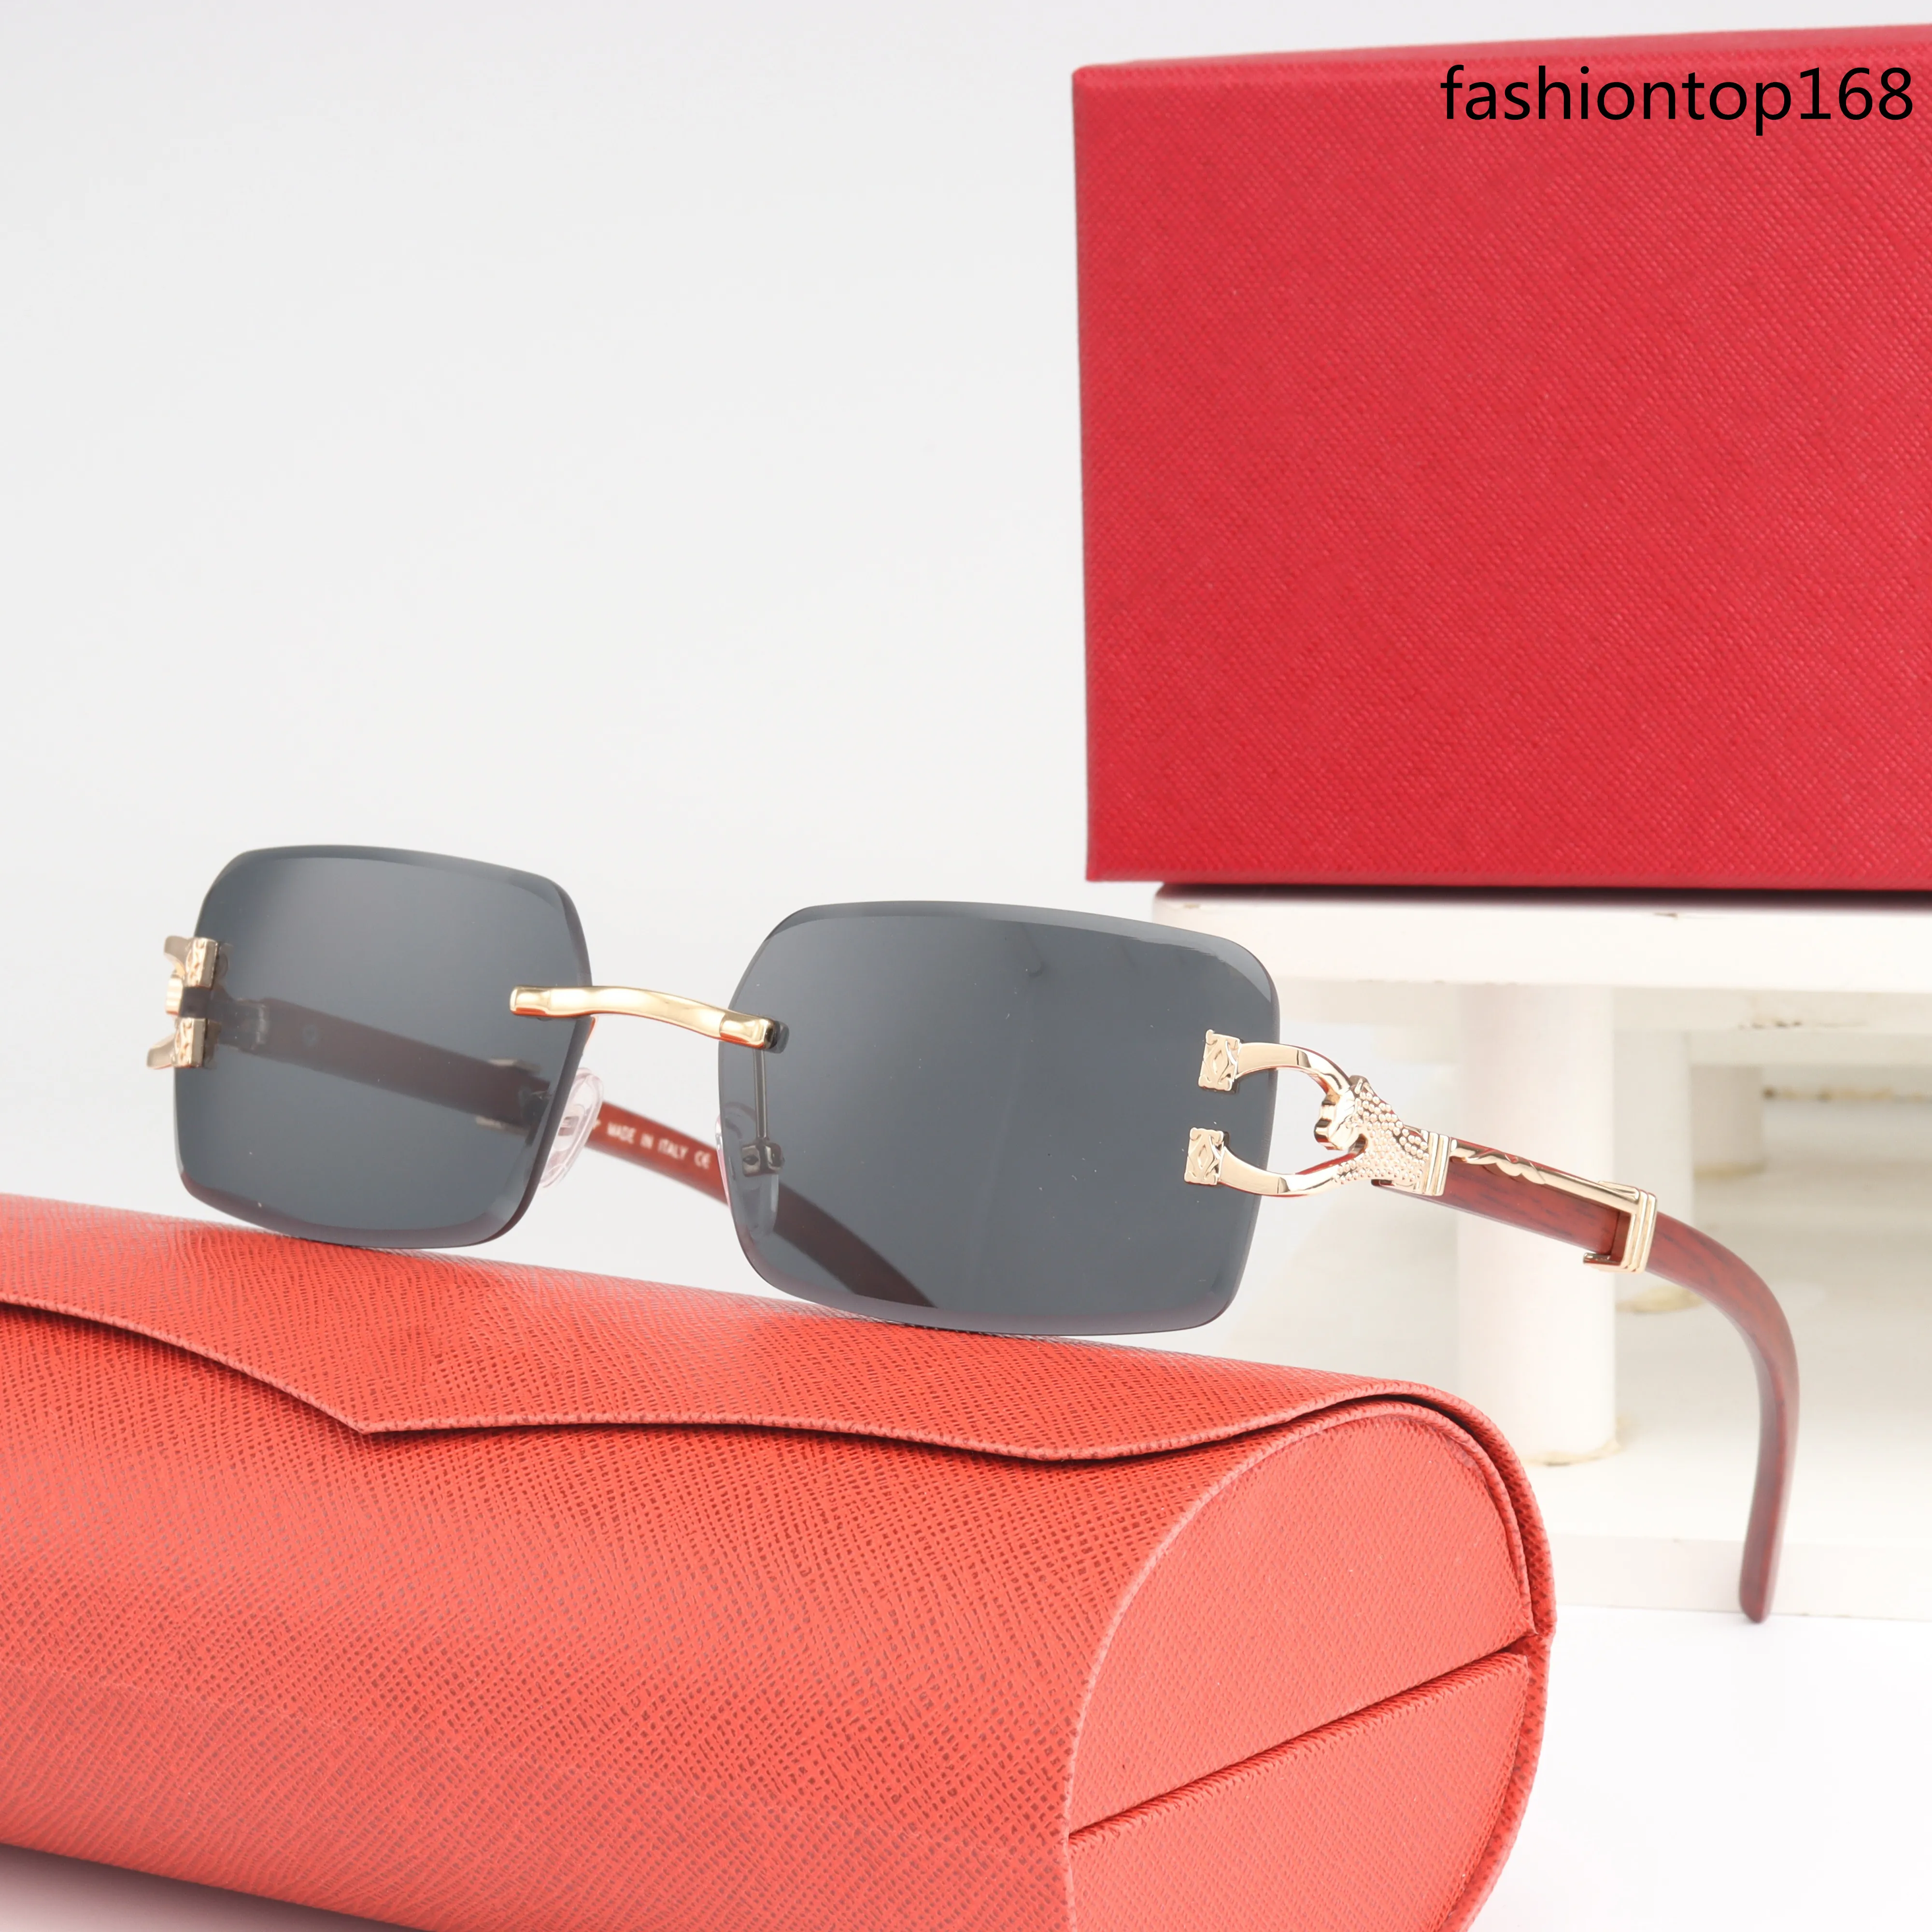 Tasarımcı Güneş Gözlüğü Yeni Moda, Popüler Stil Renkli Lensler UV400 Koruyucu Gözlüklü Eşsiz Bir Çerçevesiz Tasarım Özellikleri